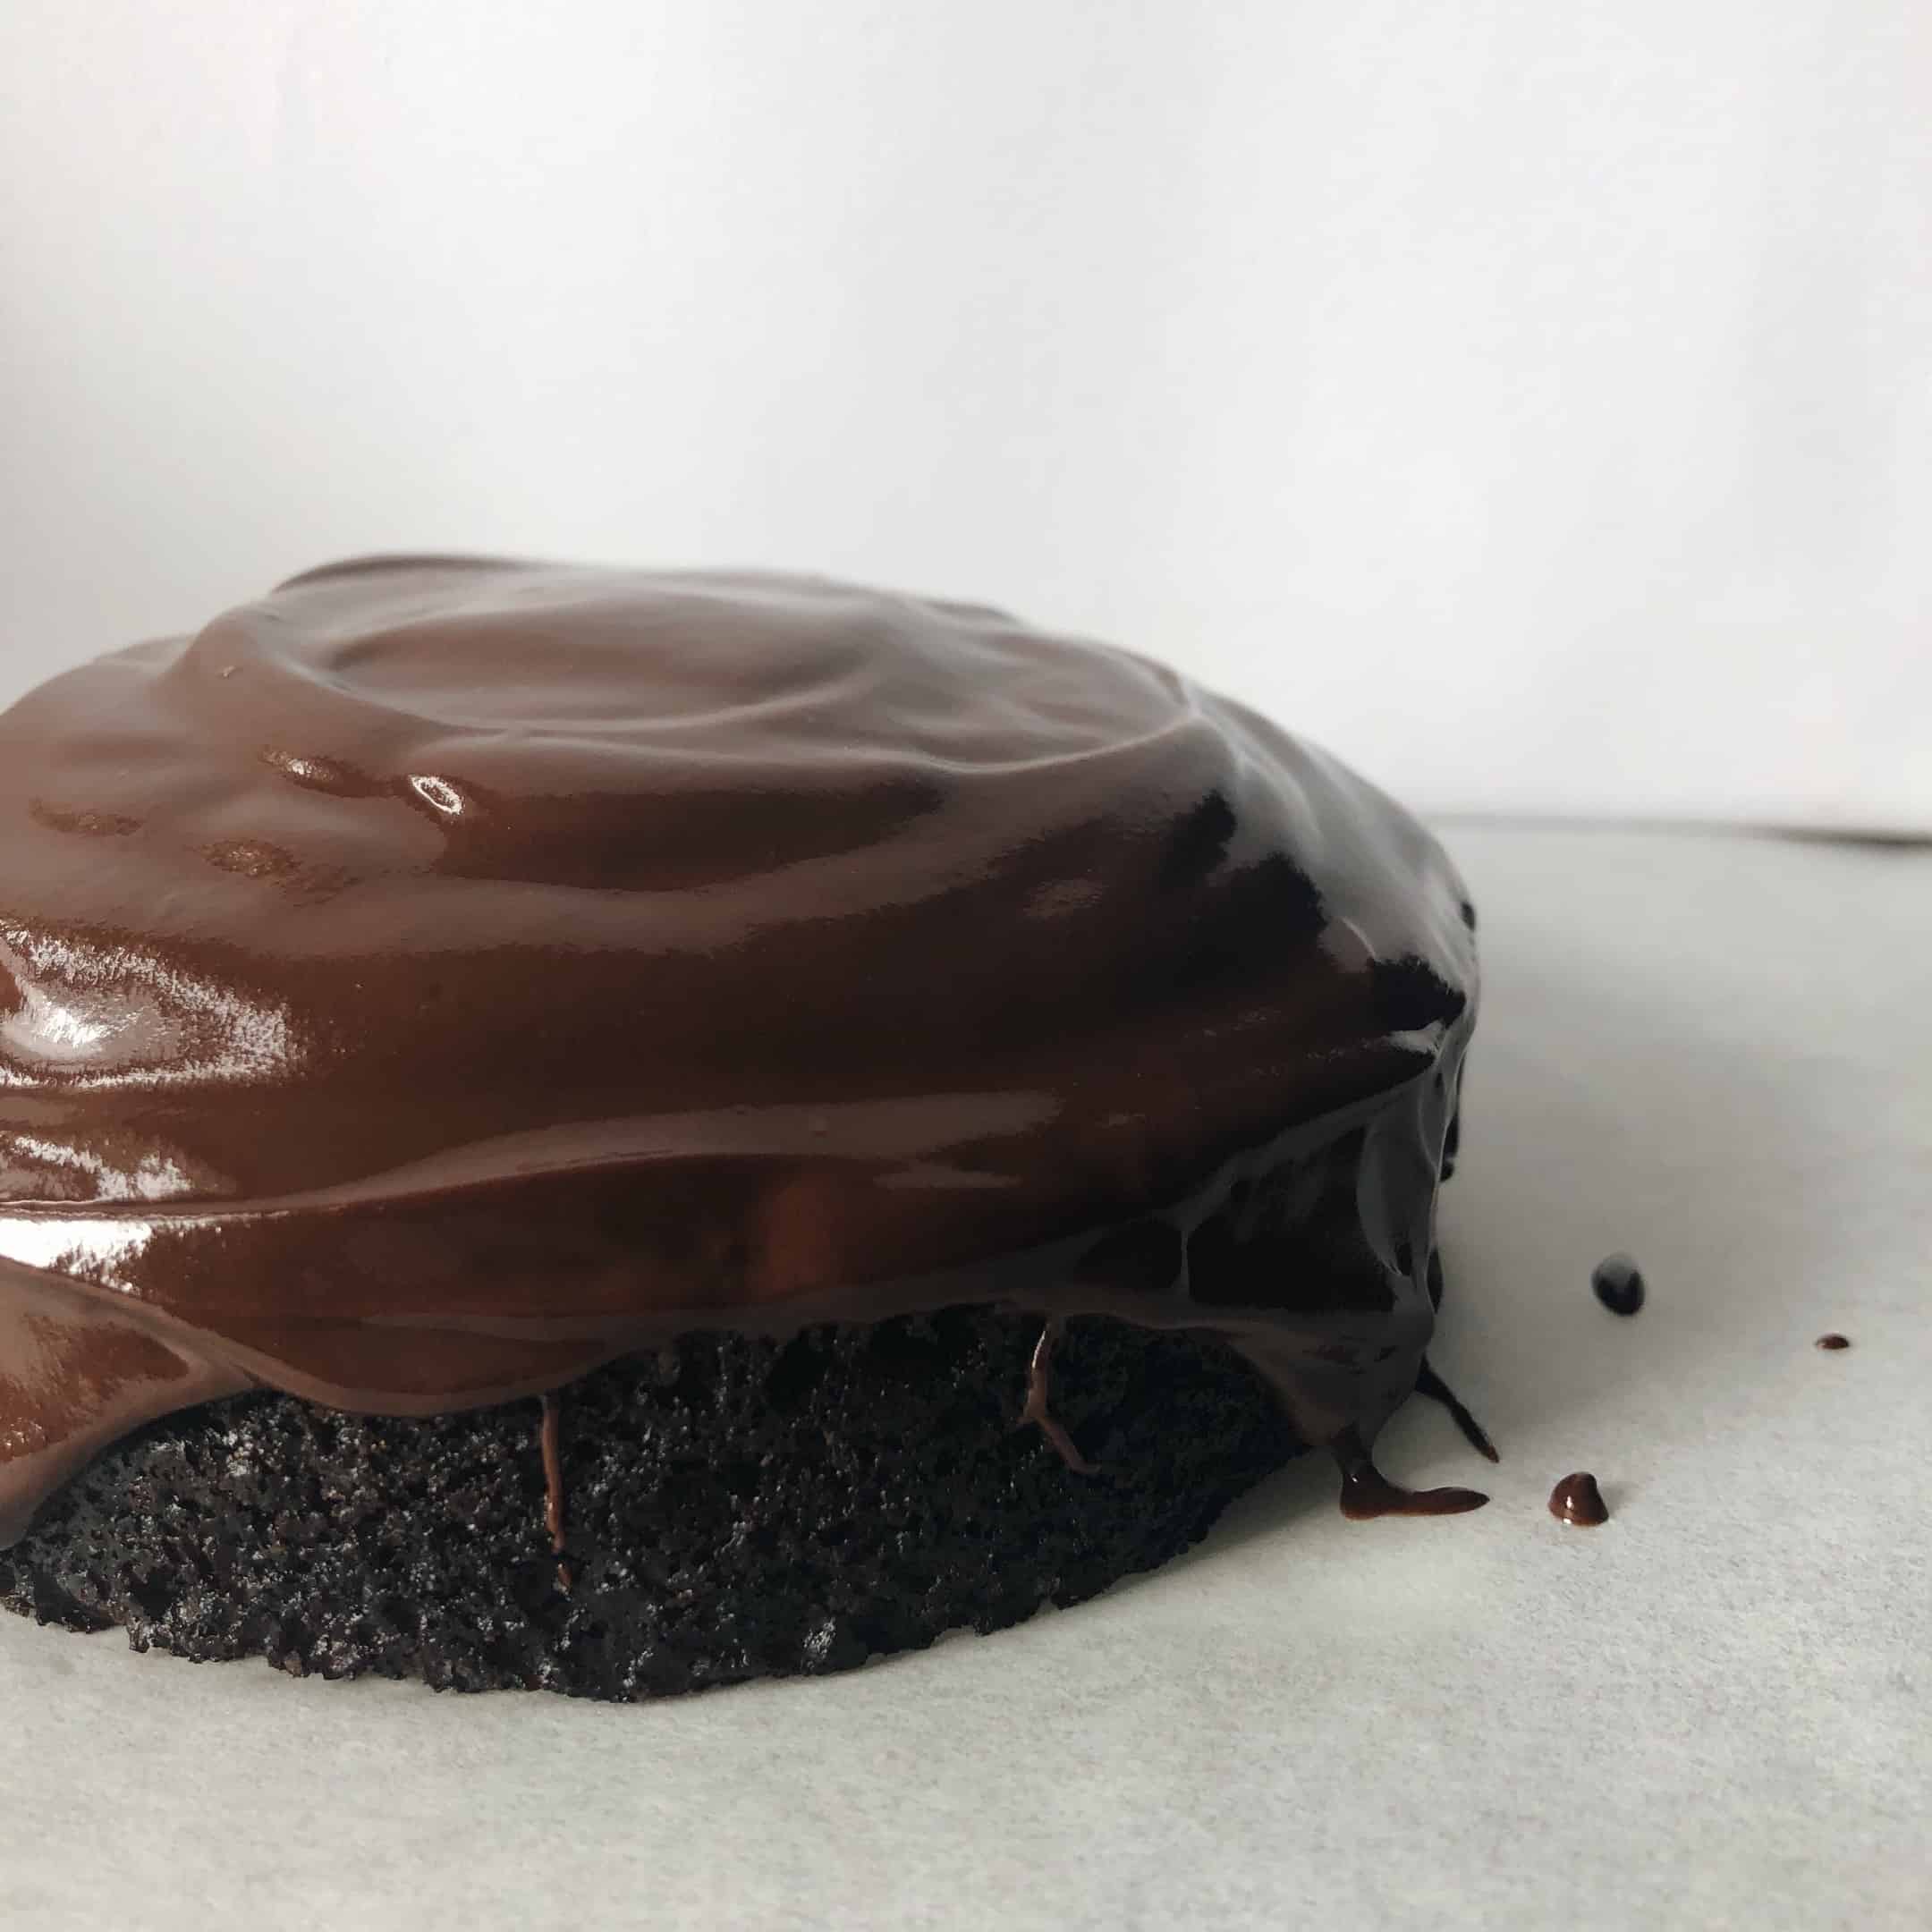 Single Serve Chocolate Cake